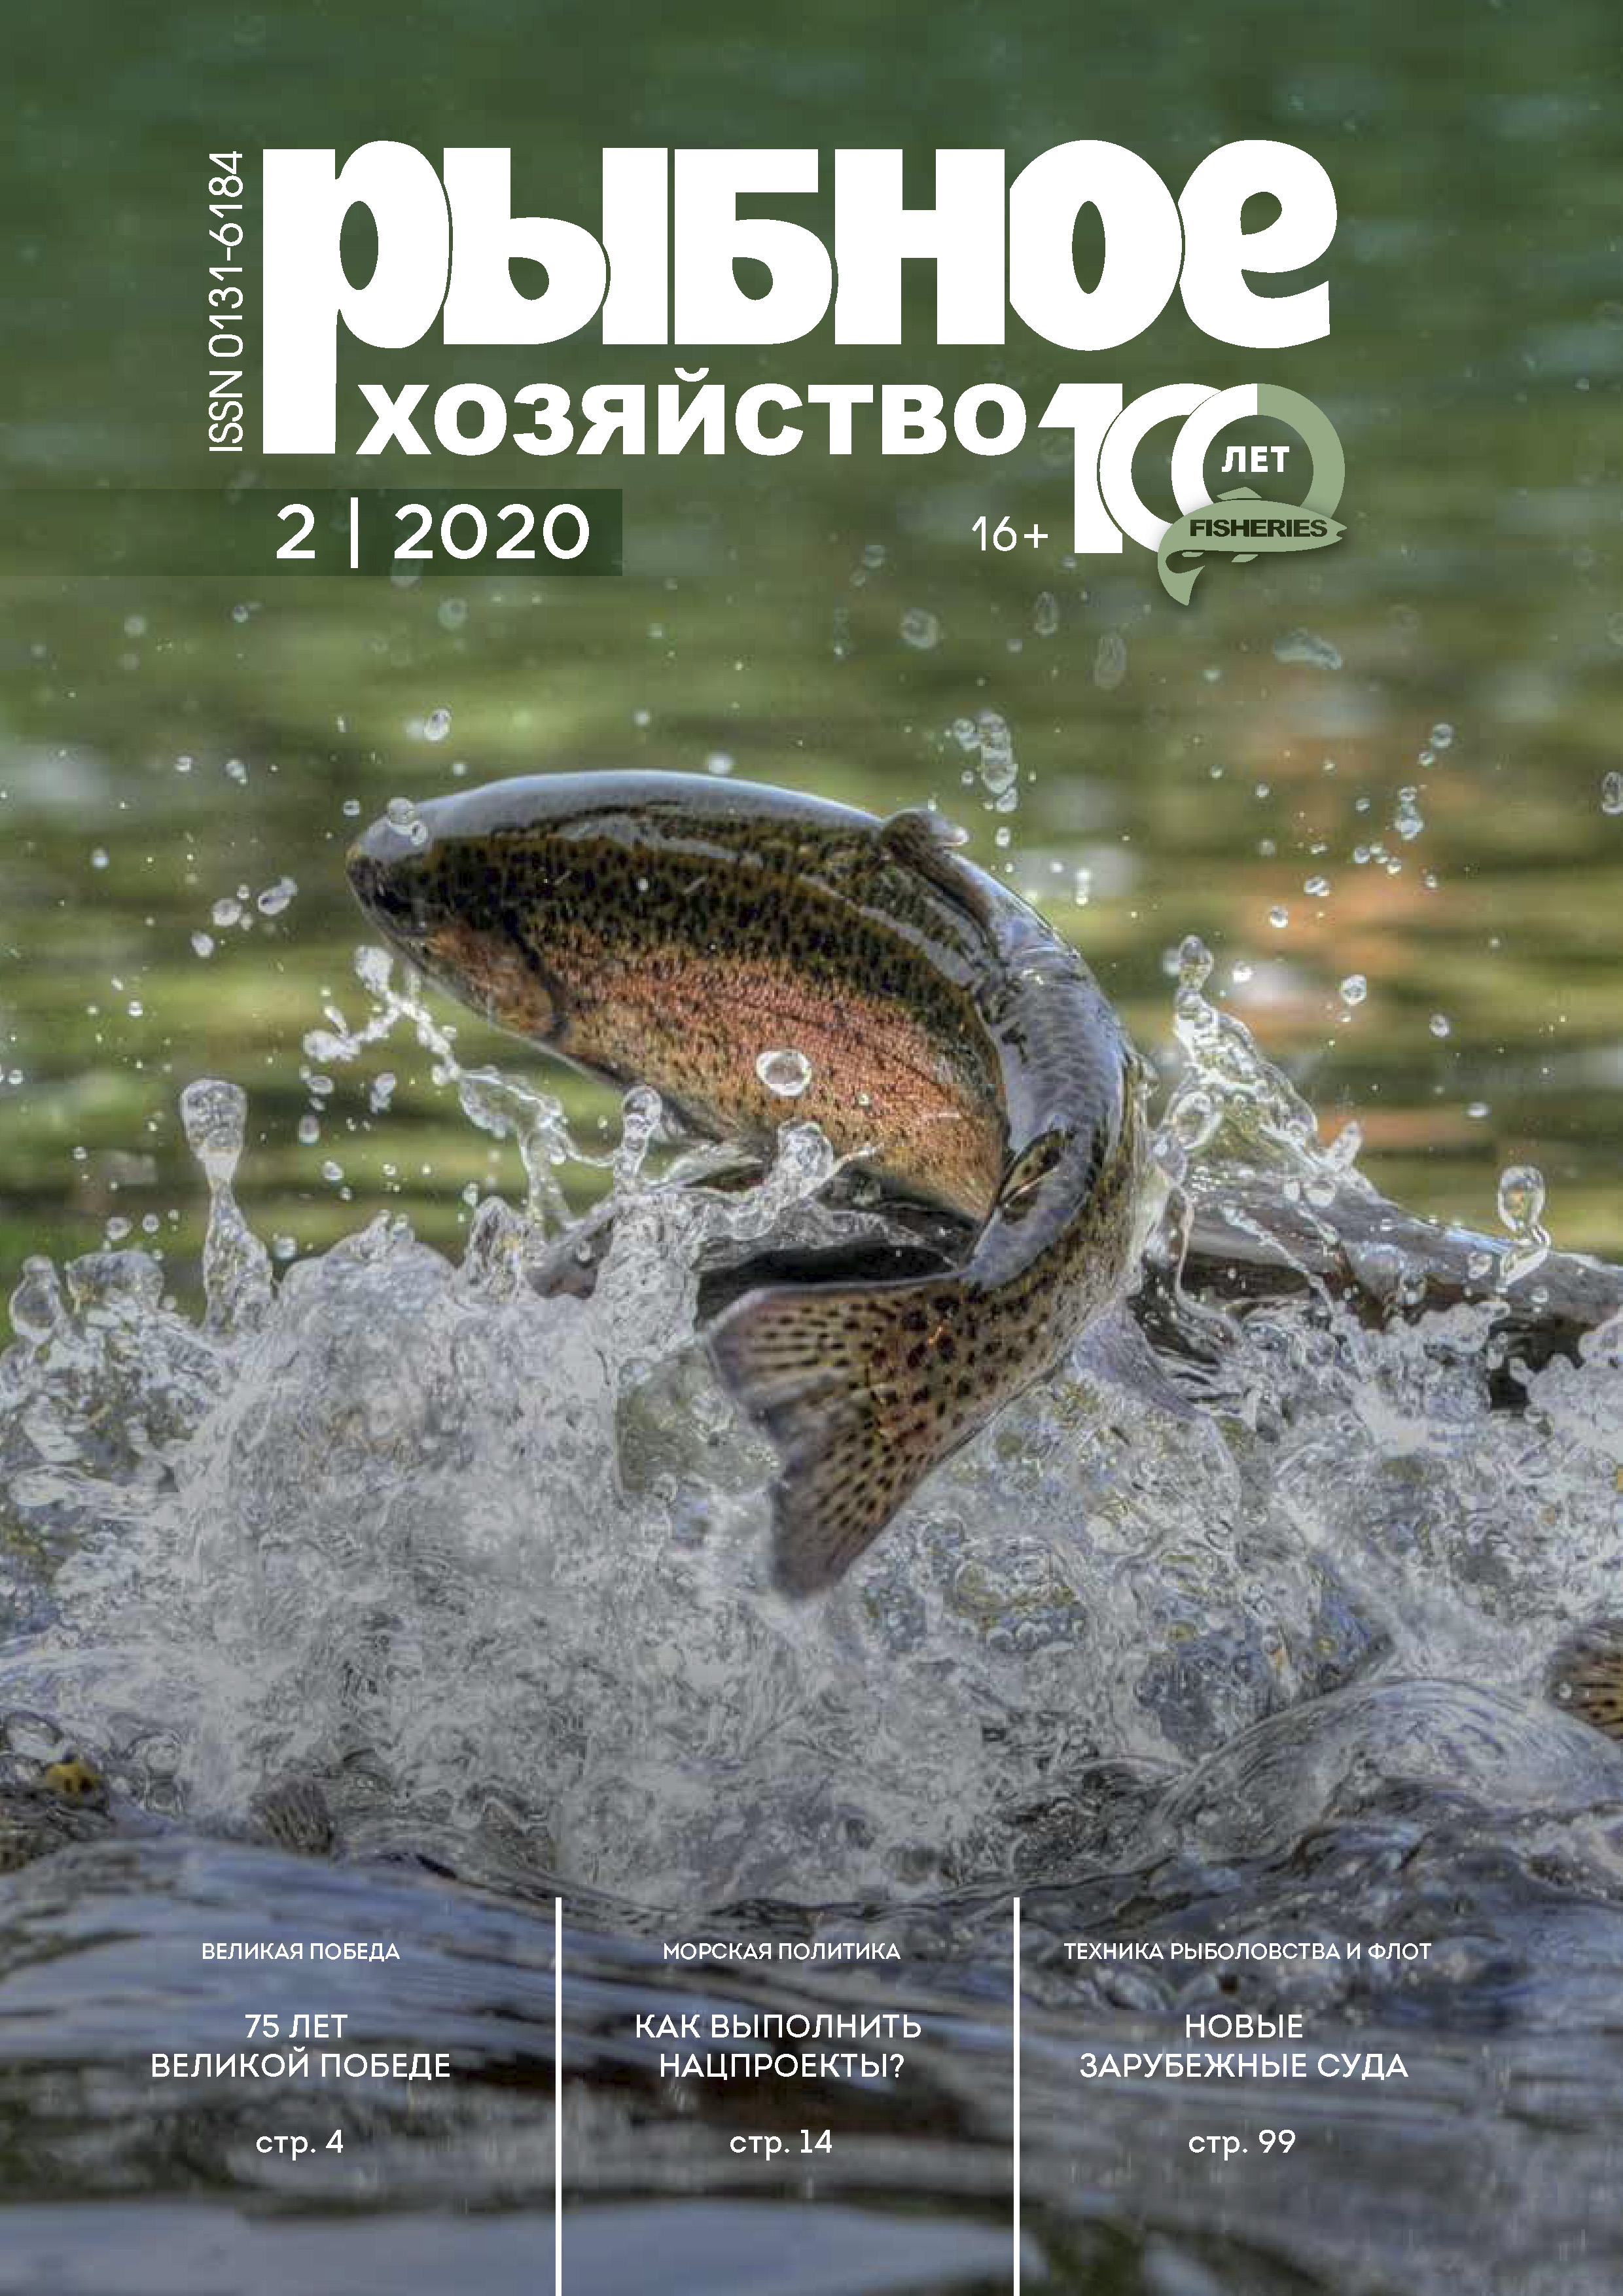             Как ленинградцев в блокаду спасала маленькая рыбка – колюшка
    